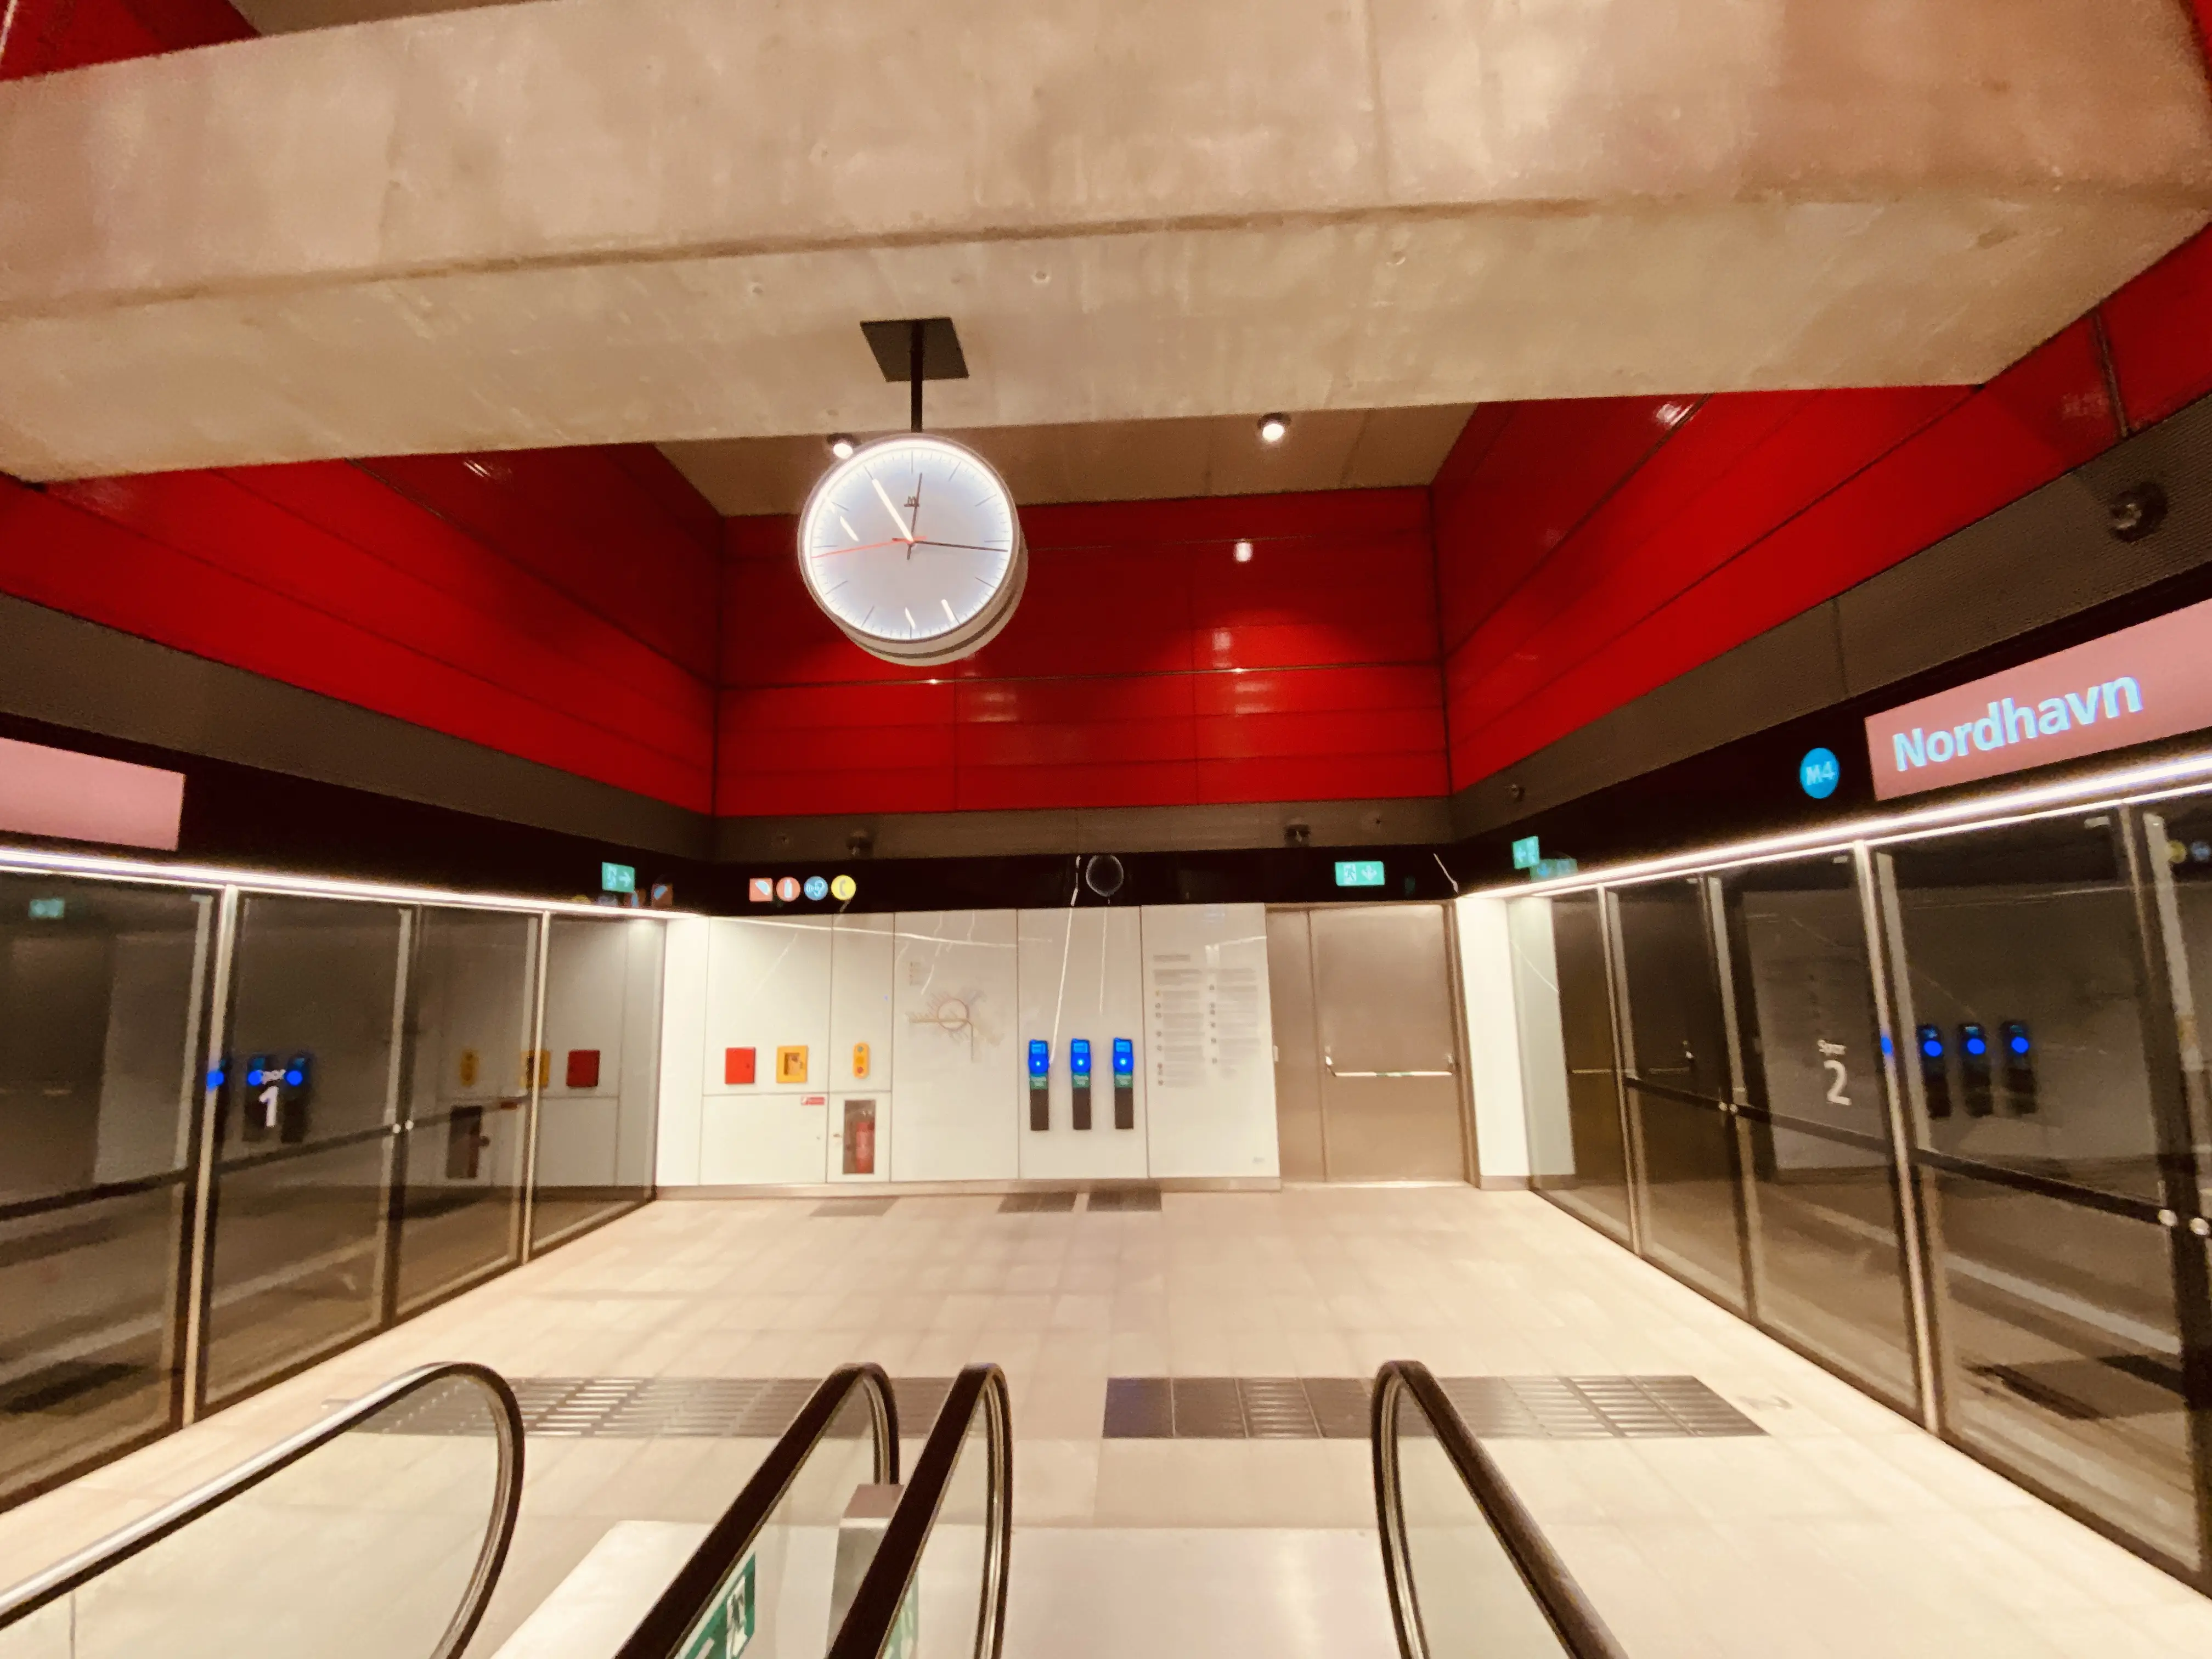 Billede af Nordhavn Metrostation, som har en varm og dyb rød farve, der signalerer trafik, transport og transit.